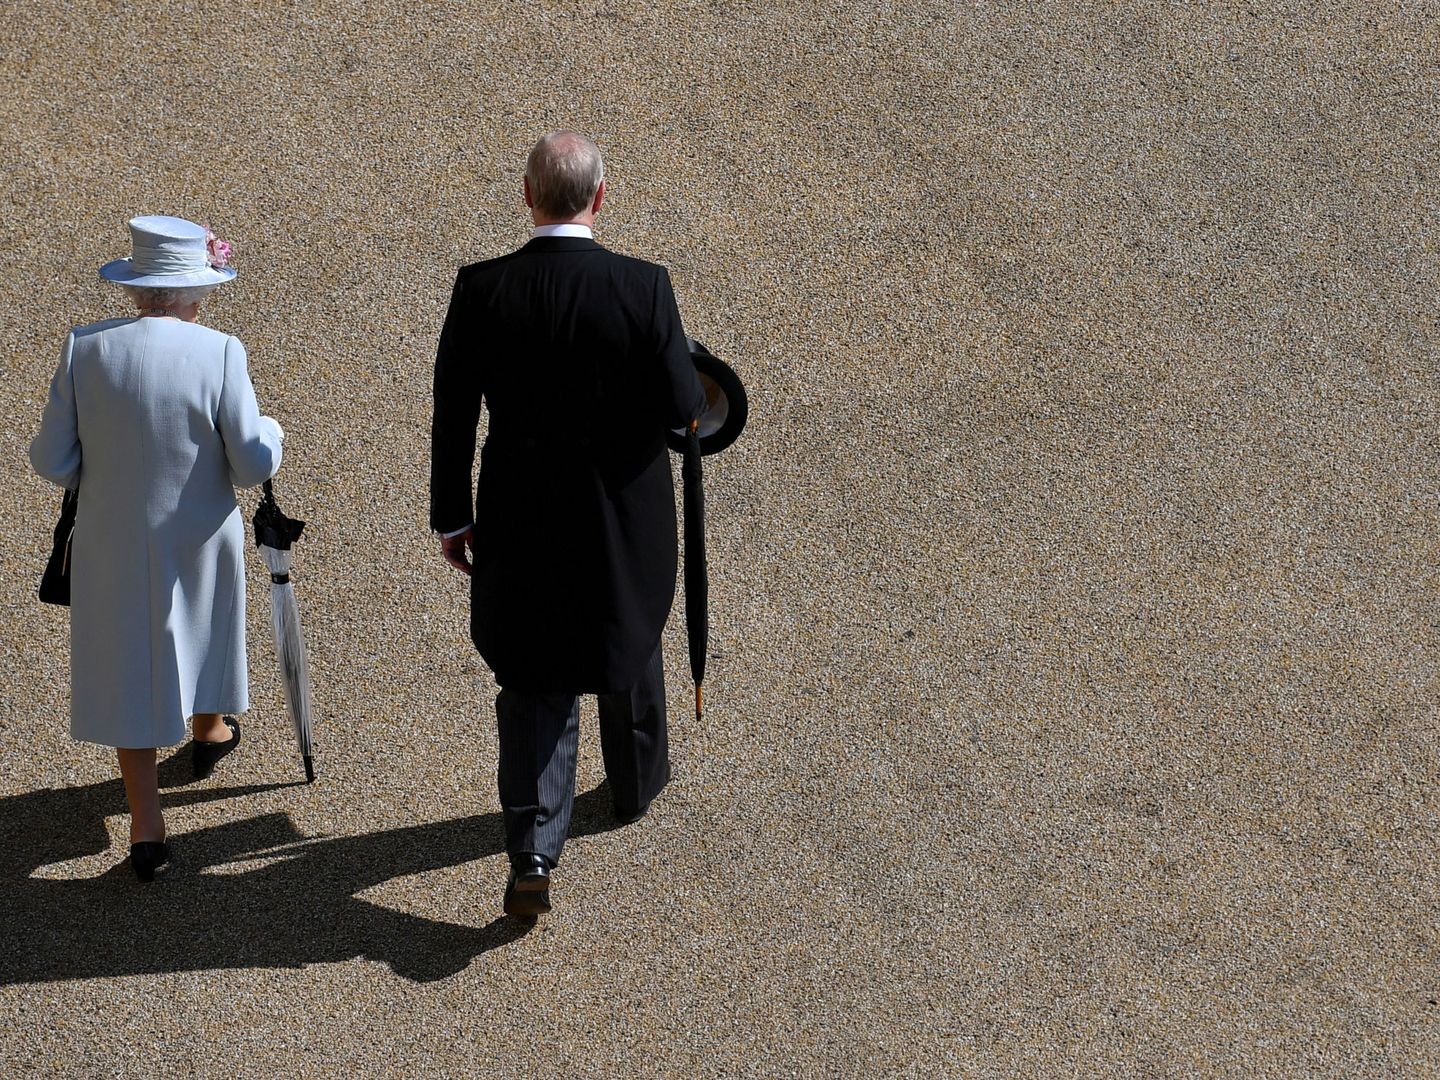 La reina Isabel y el príncipe Andrés, en una imagen de archivo. (Reuters)